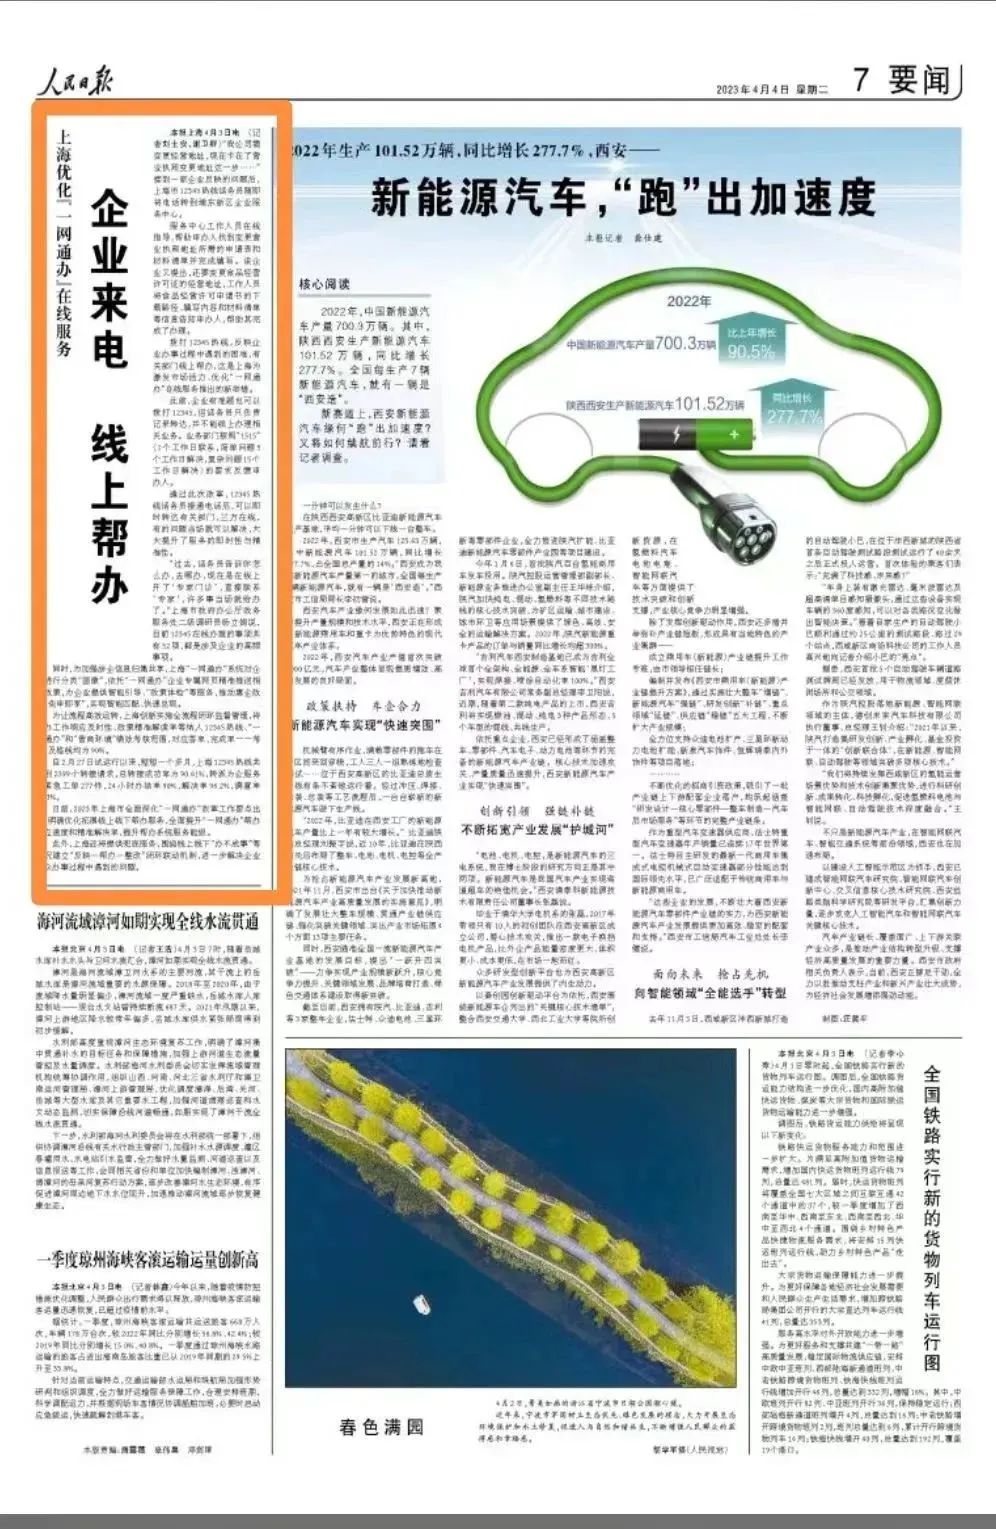 人民日报关注上海优化“一网通办”服务平台在线服务